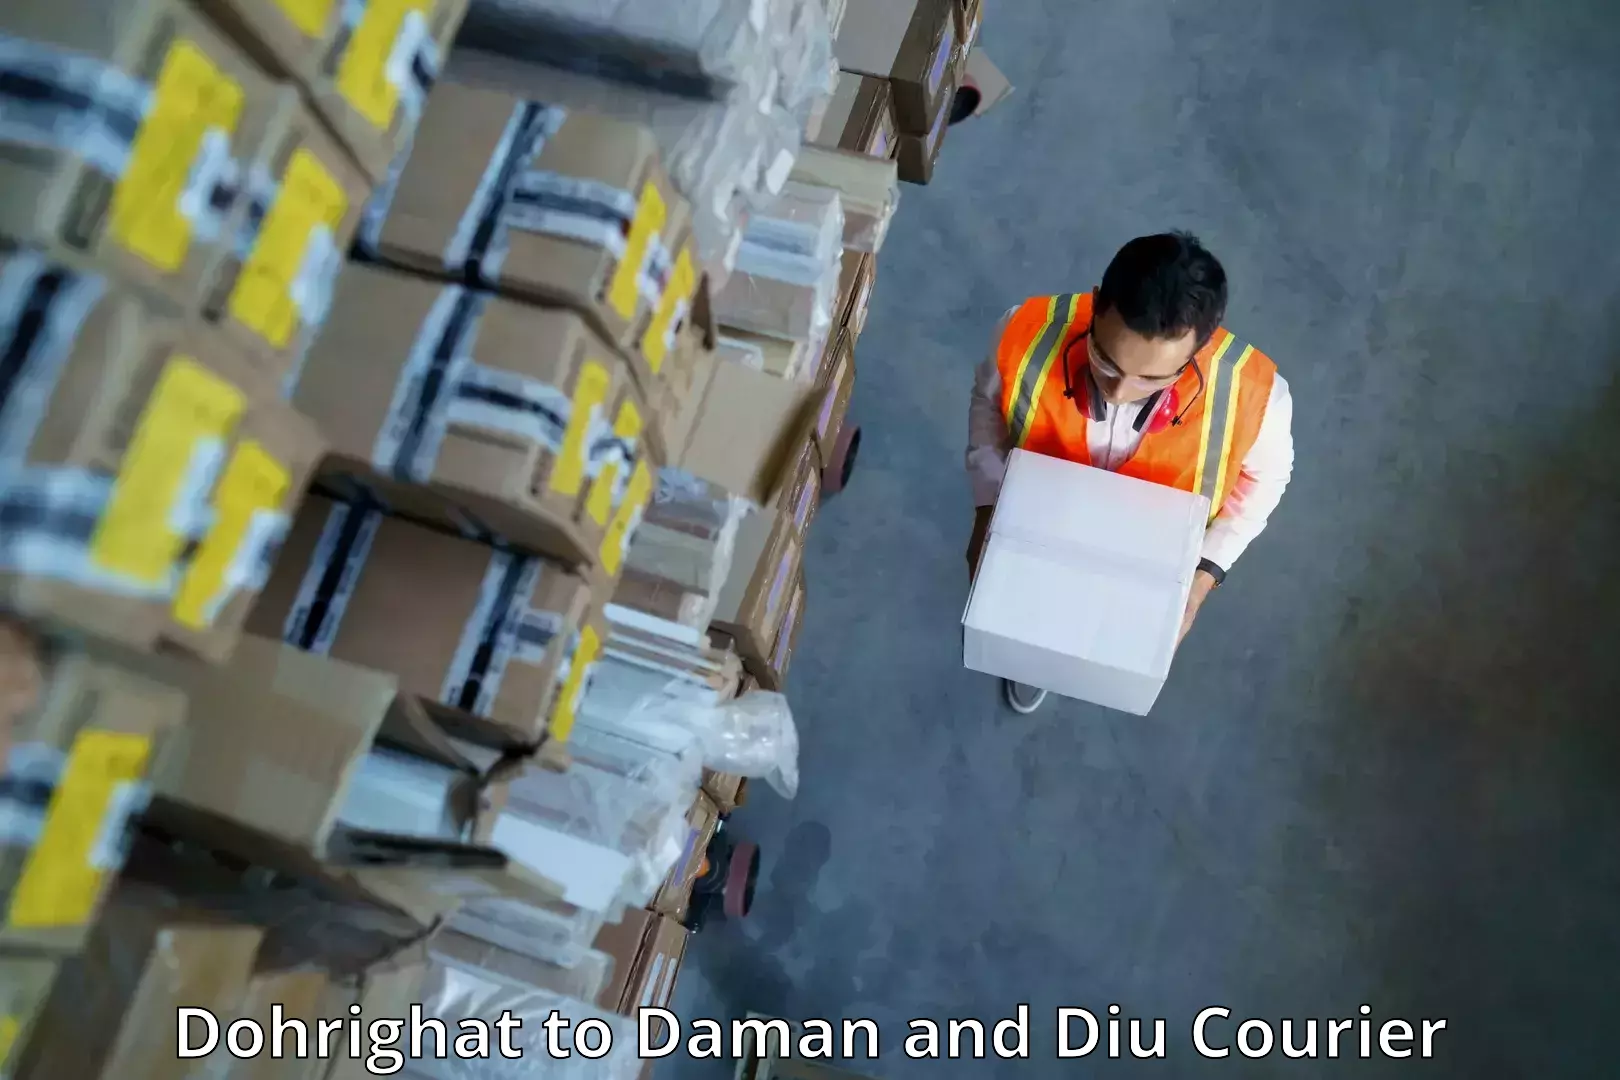 Courier service comparison Dohrighat to Daman